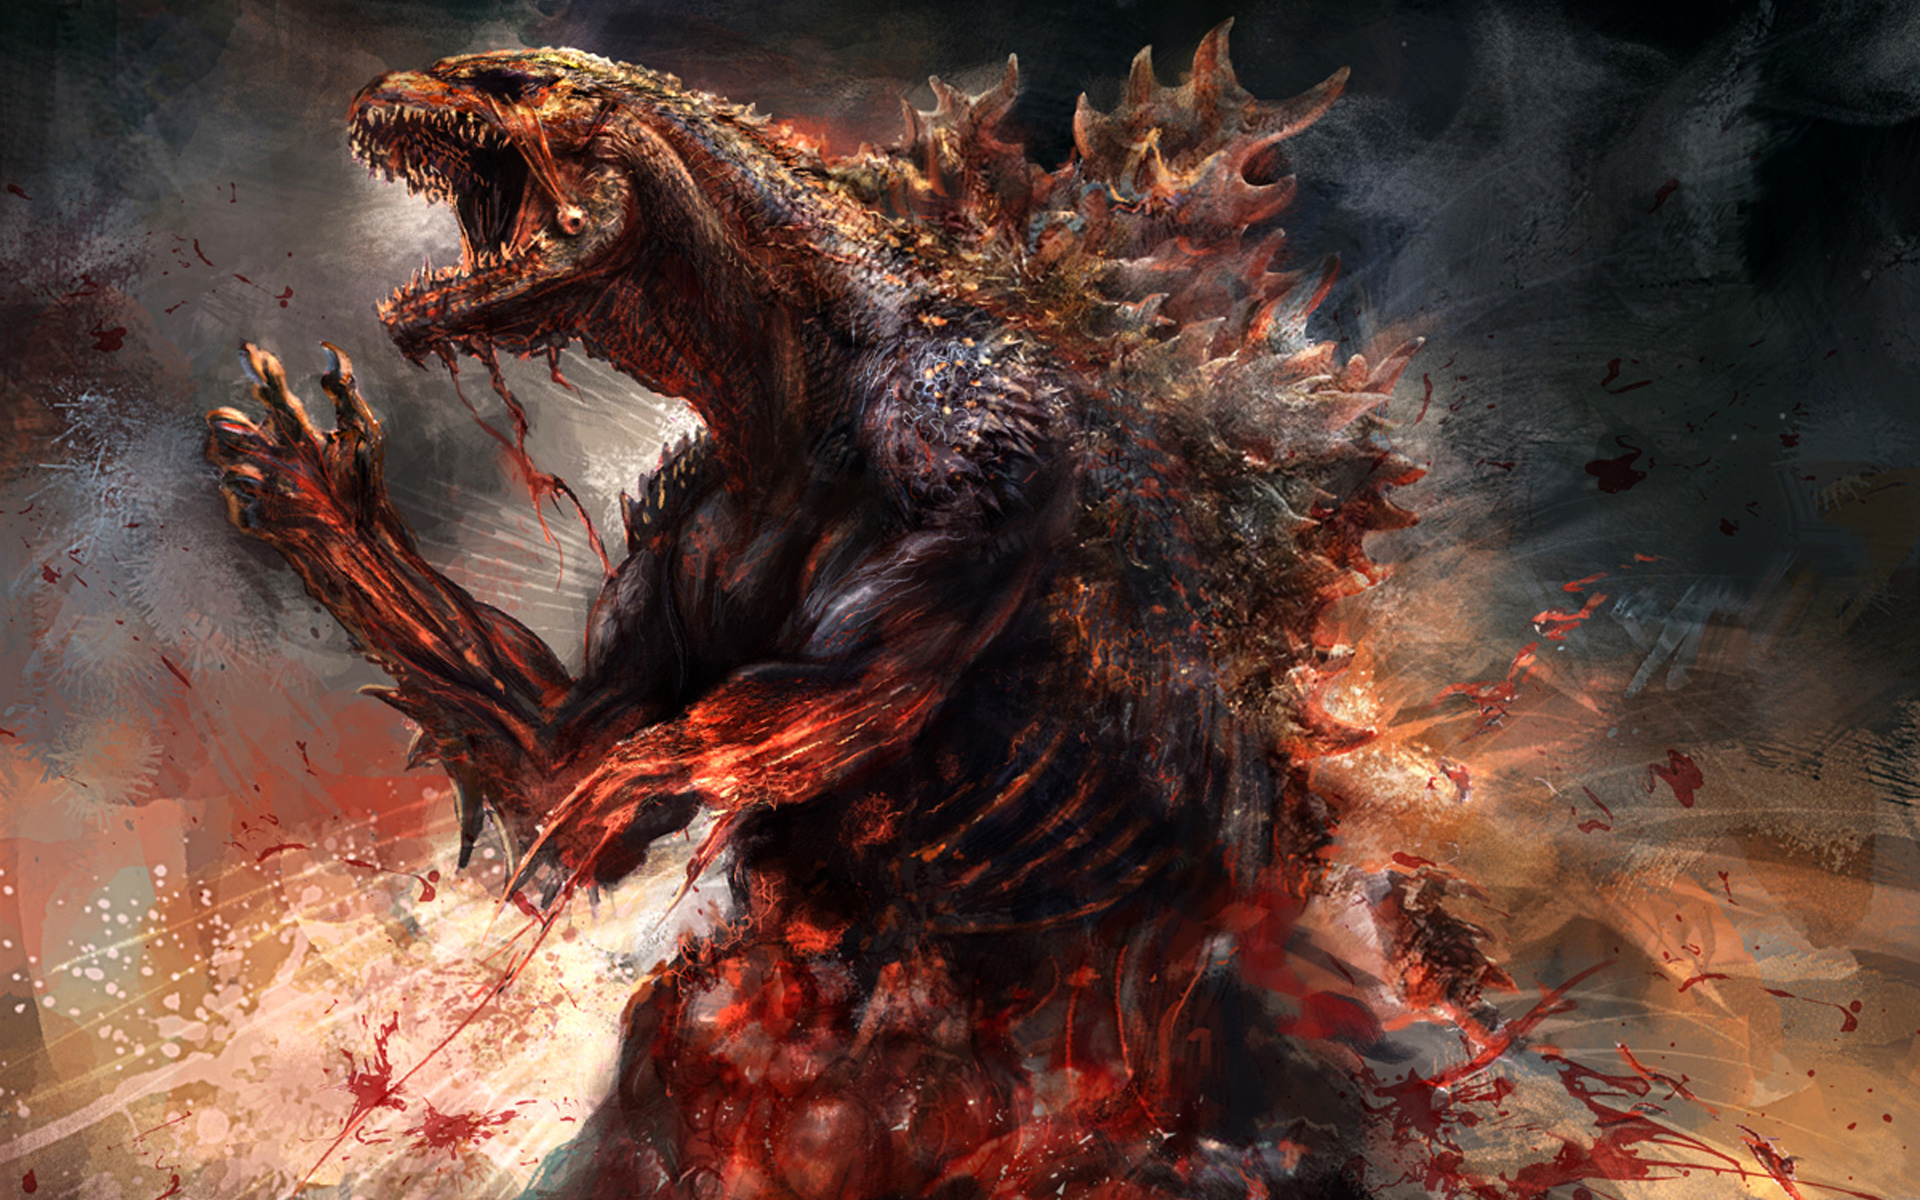 Movie Godzilla (2014) HD Wallpaper | Background Image